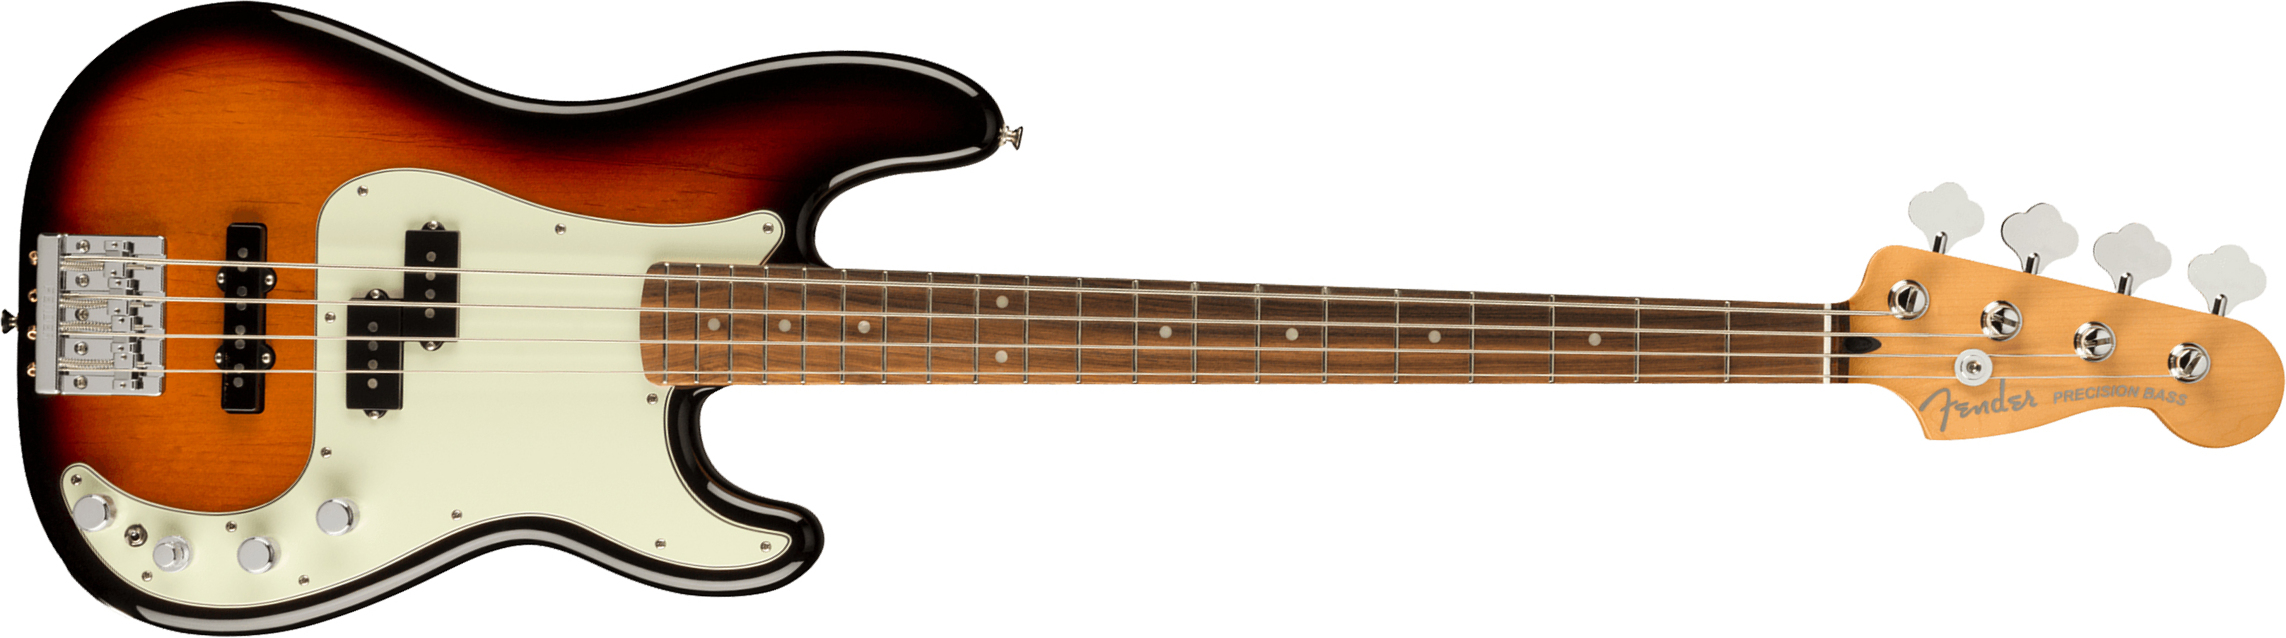 Fender Precision Bass Player Plus Mex Active Pf - 3-color Sunburst - Basse Électrique Solid Body - Main picture